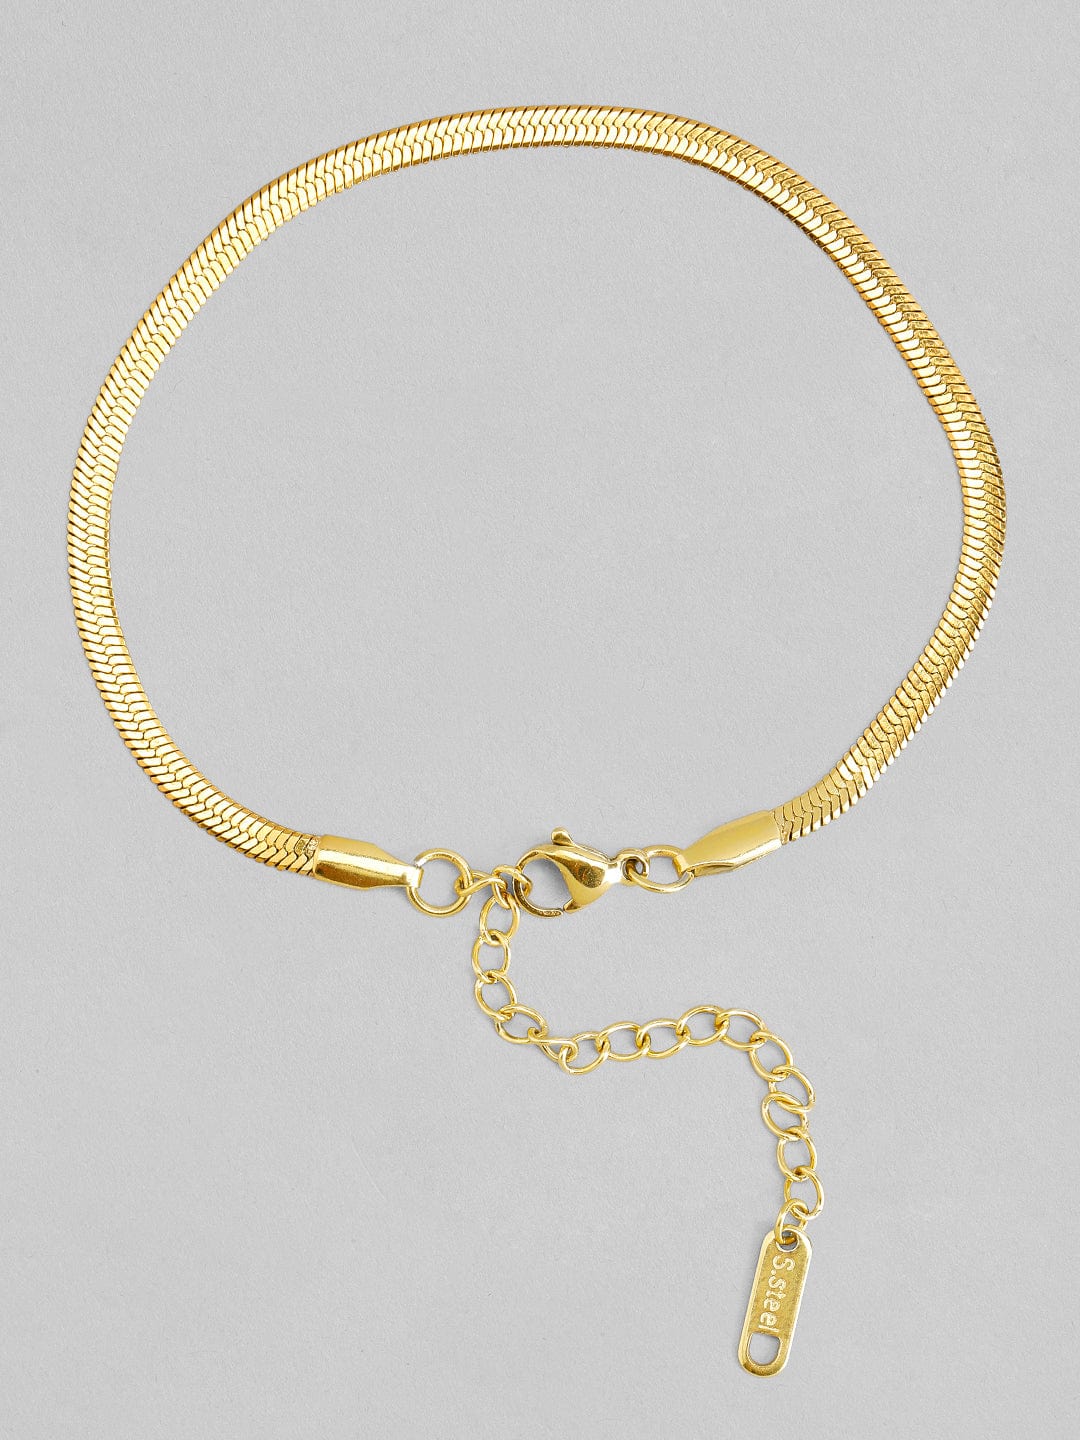 14k Gold Snake Ring w/ Diamond / Handmade by Ivry Belle Jewelry